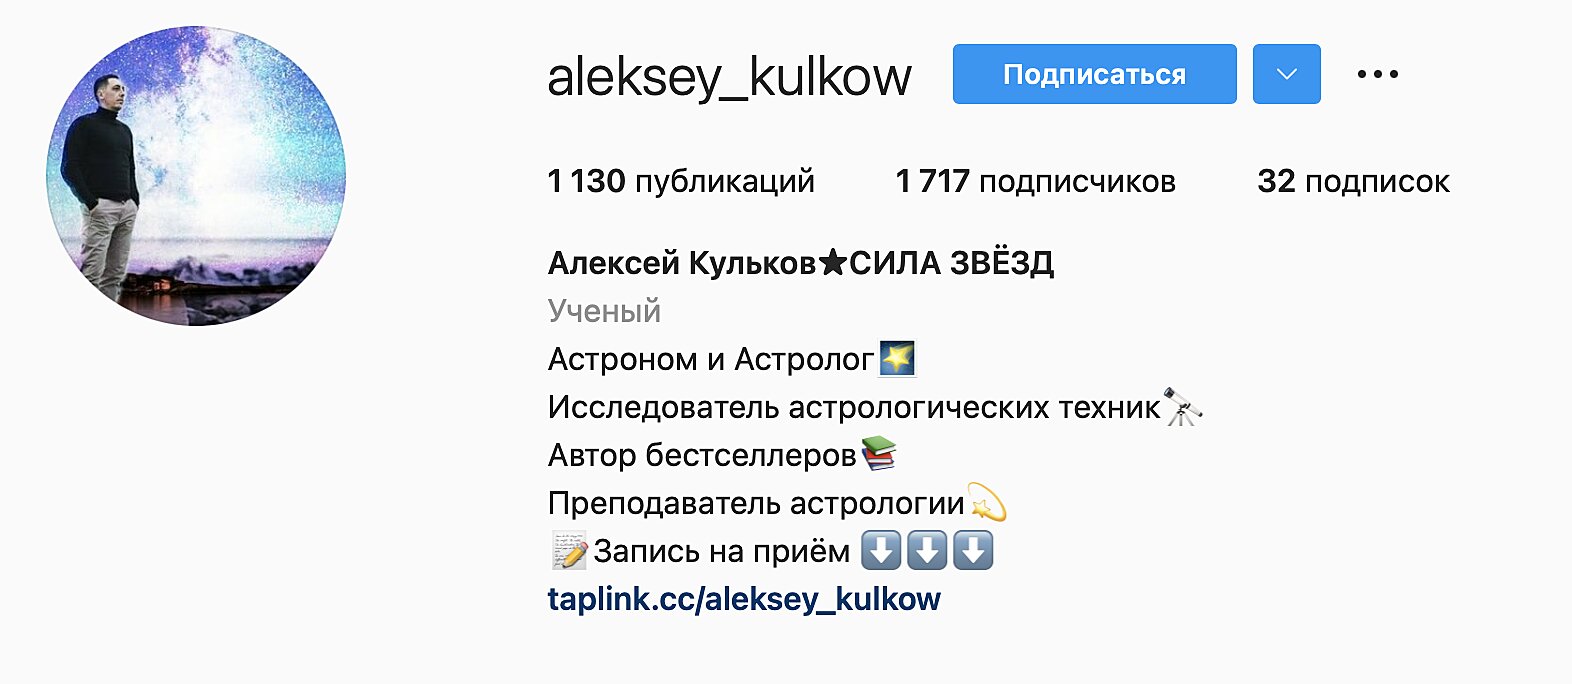 Алексей Кульков астролог инстаграм